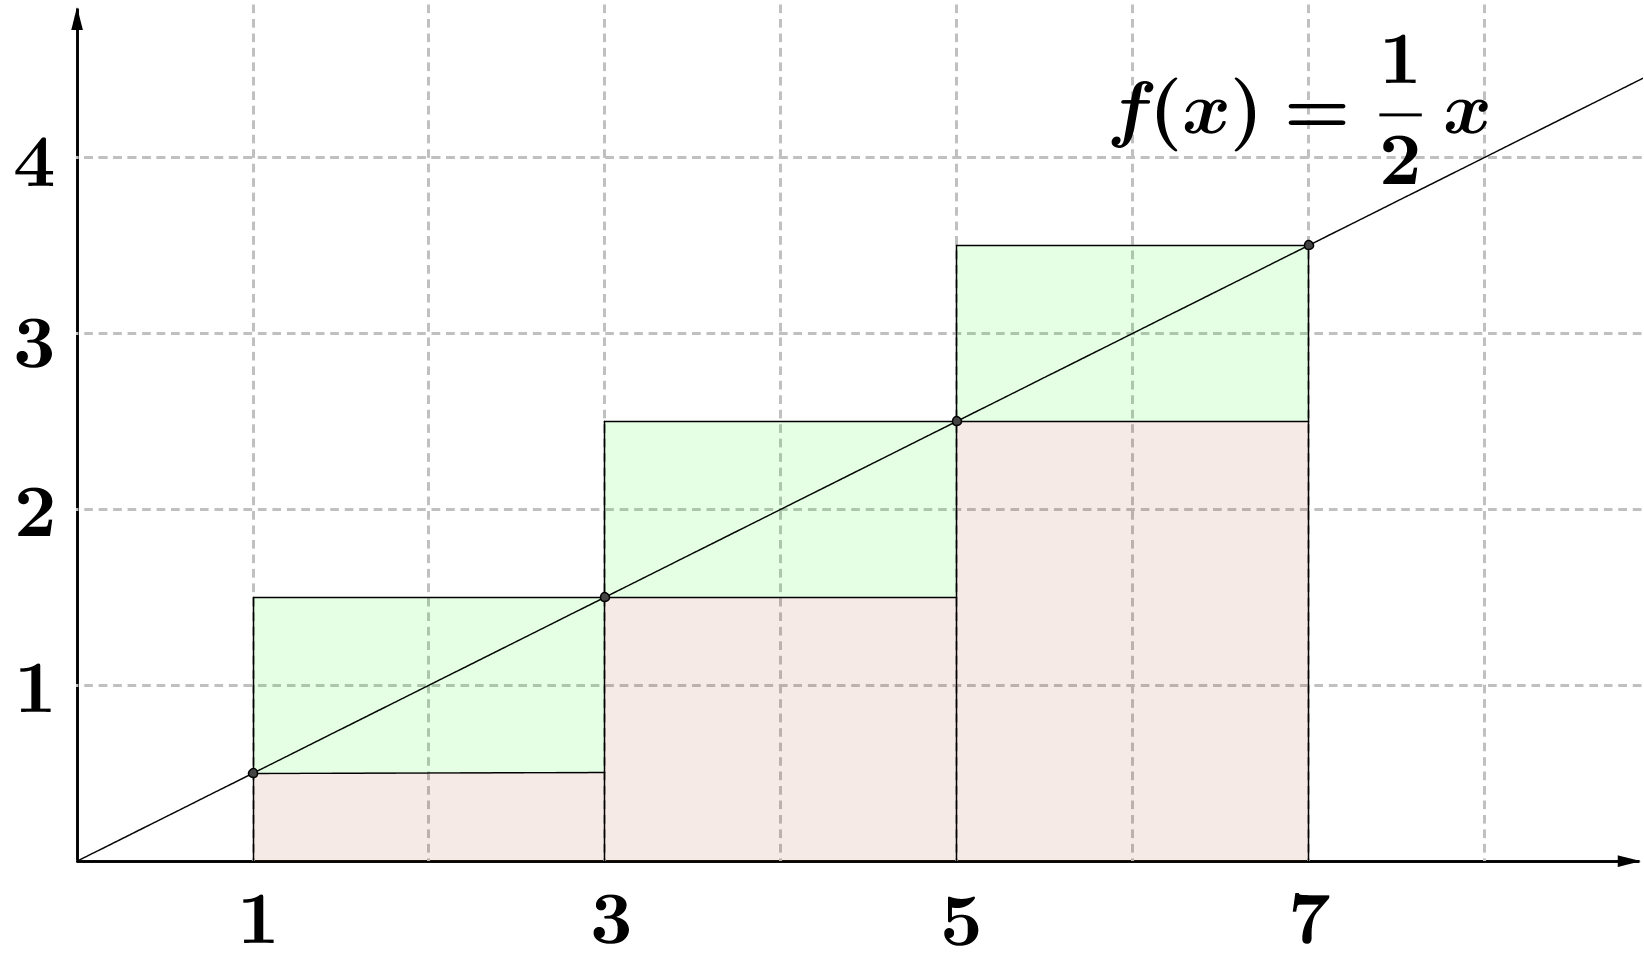 Ratkaisu: a) Arvioidaan pinta-alaa ala- ja yläsummilla s ja S : s f ) 6 6 ja S f 7) 6 7 6. Siis < A <. Kuva 6.5: Ala- ja yläsummat a-kohdassa.